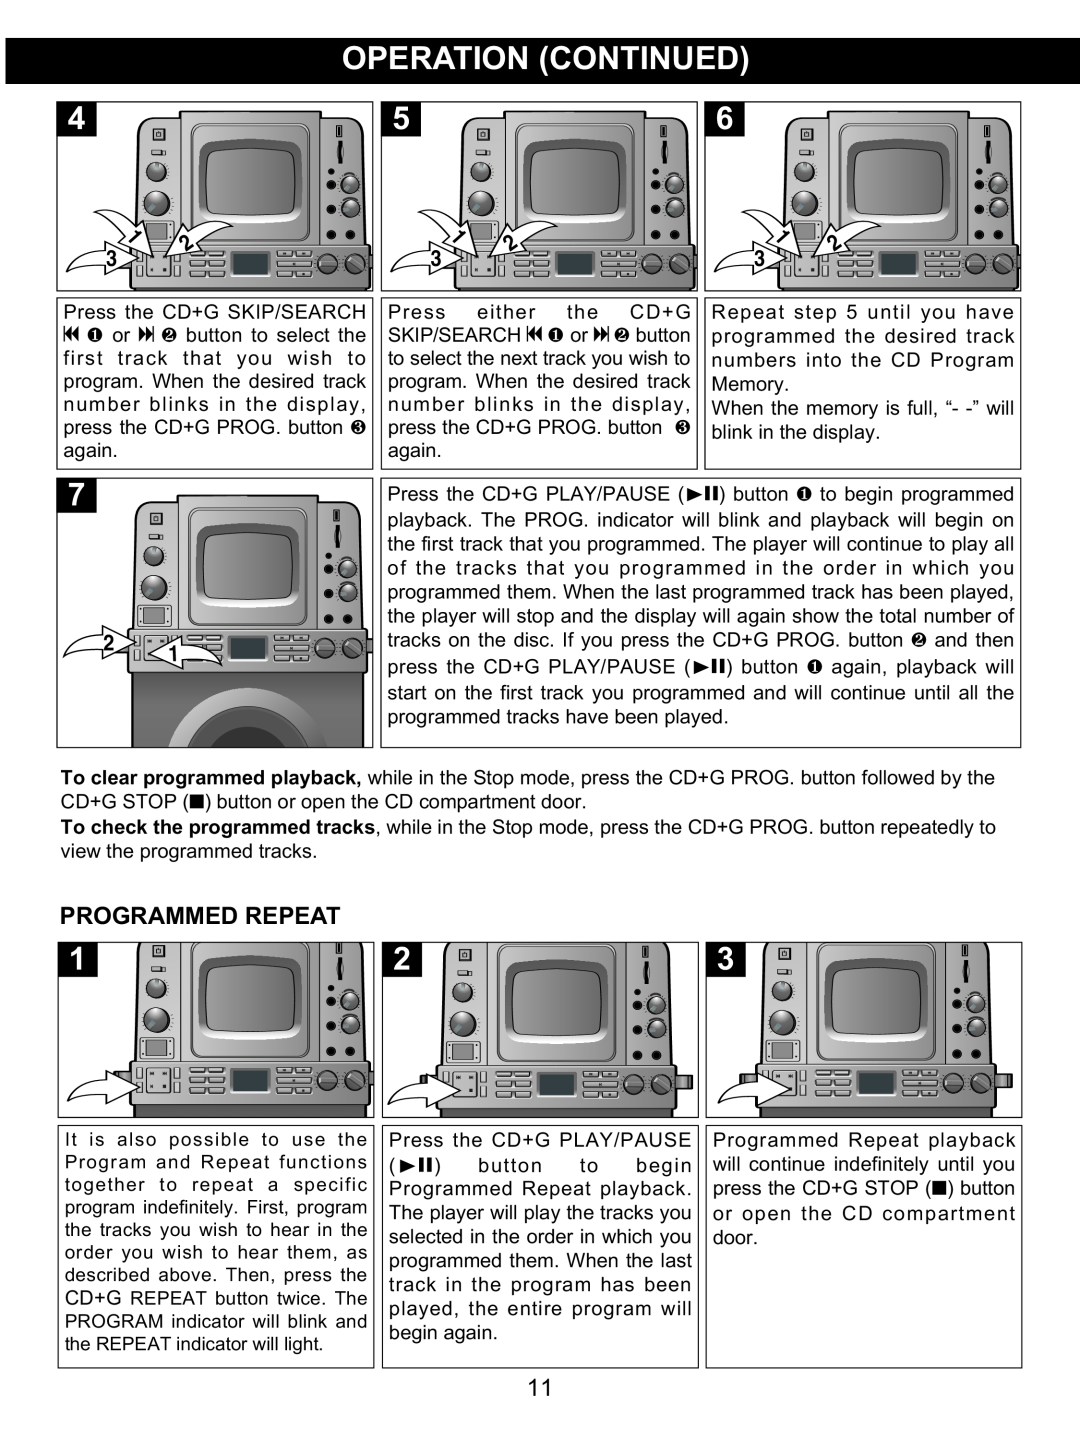 Memorex MKS8590 manual Programmed Repeat 